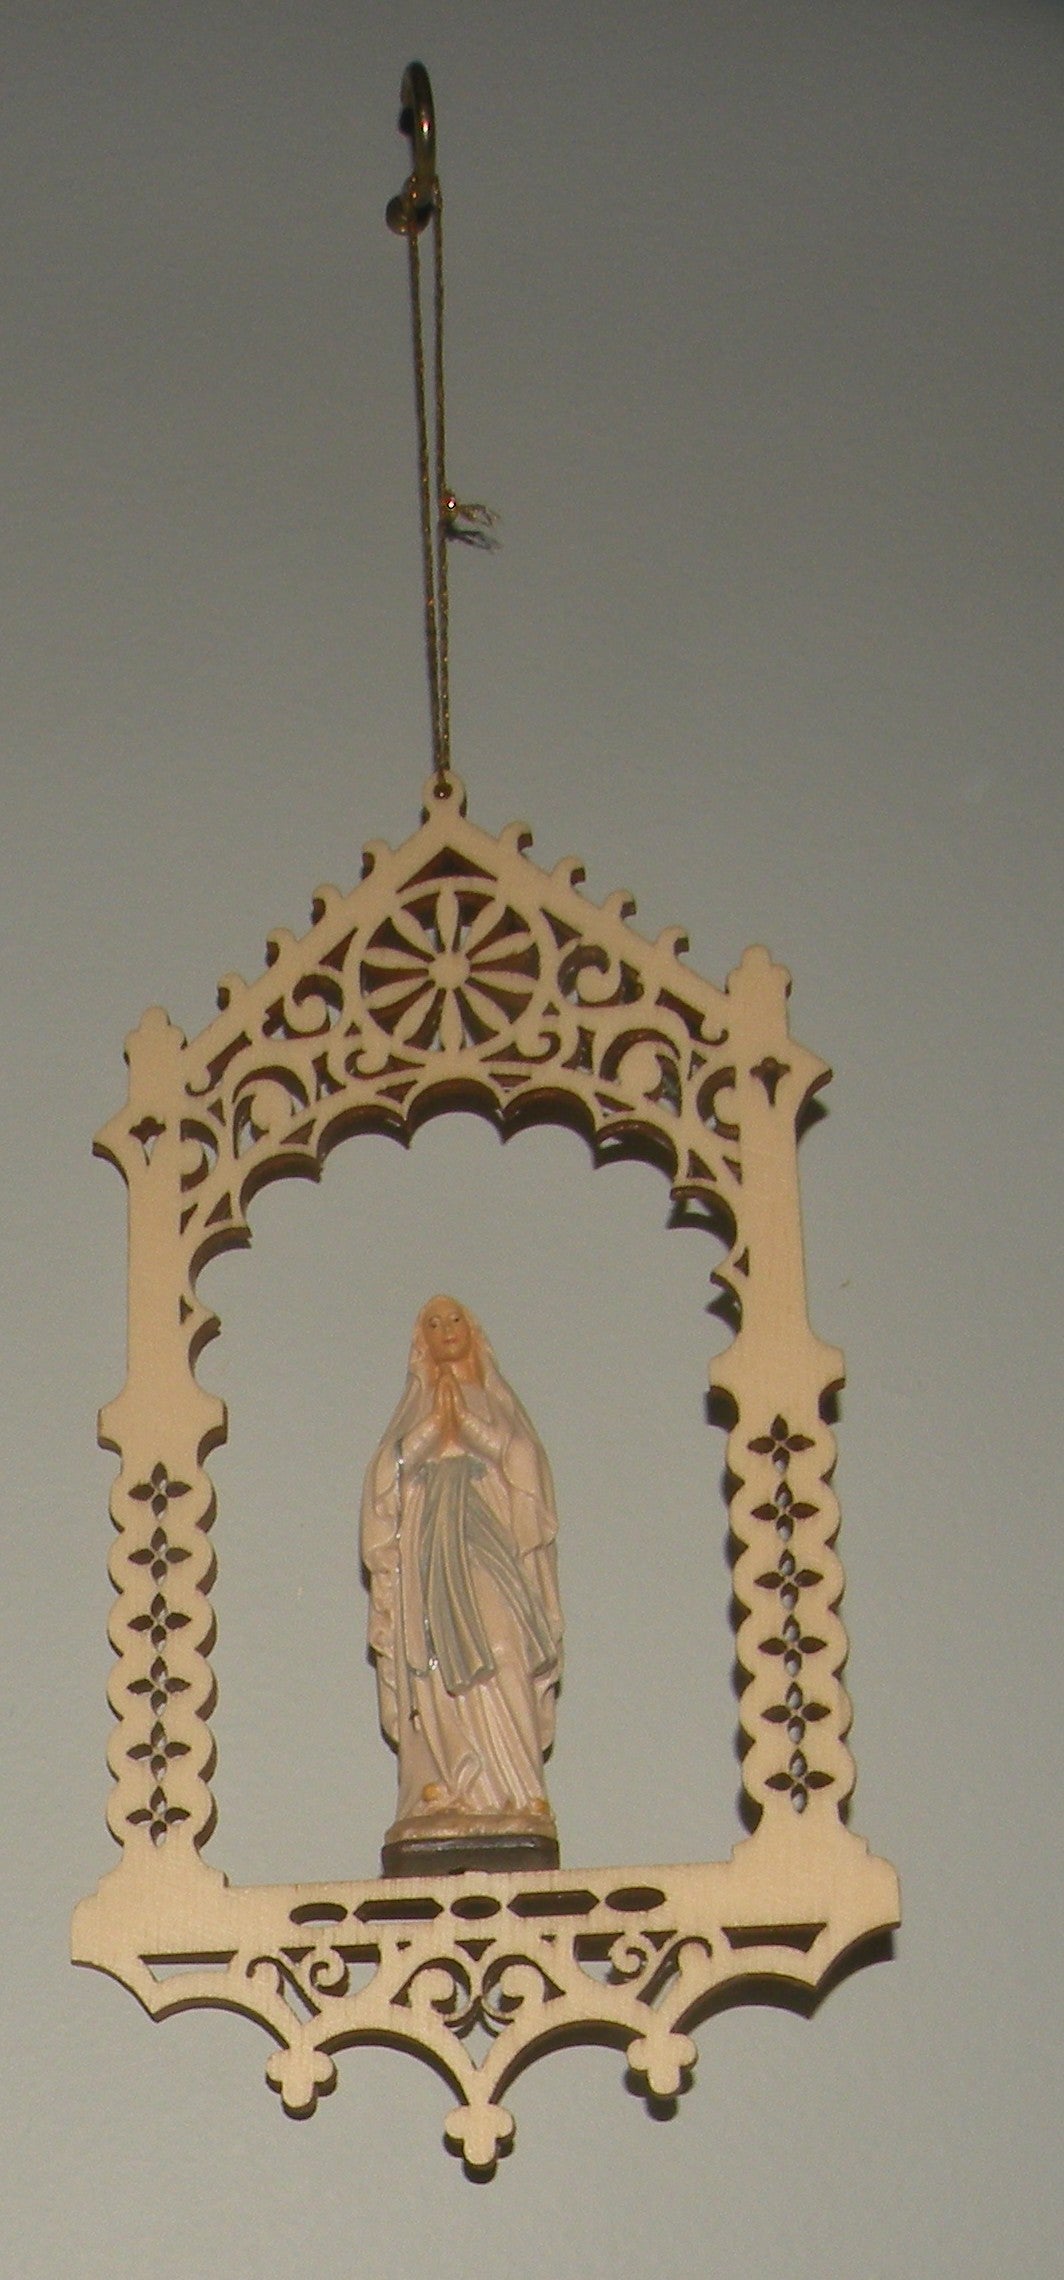 Virgin of Lourdes in niche  - 08363